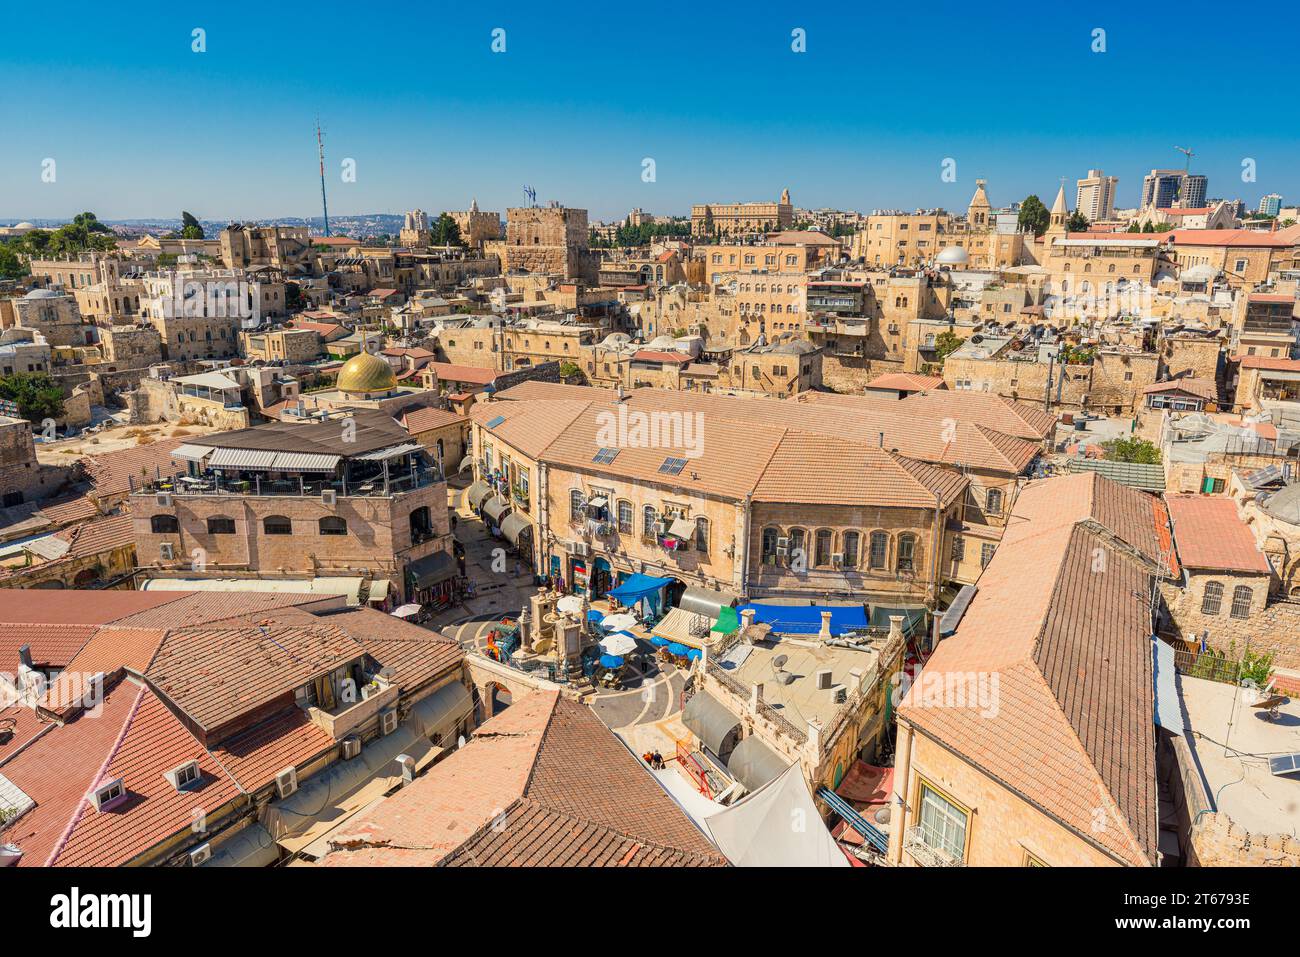 Vue en haut angle de la région du Muristan dans le quartier chrétien de la vieille ville de Jérusalem Banque D'Images